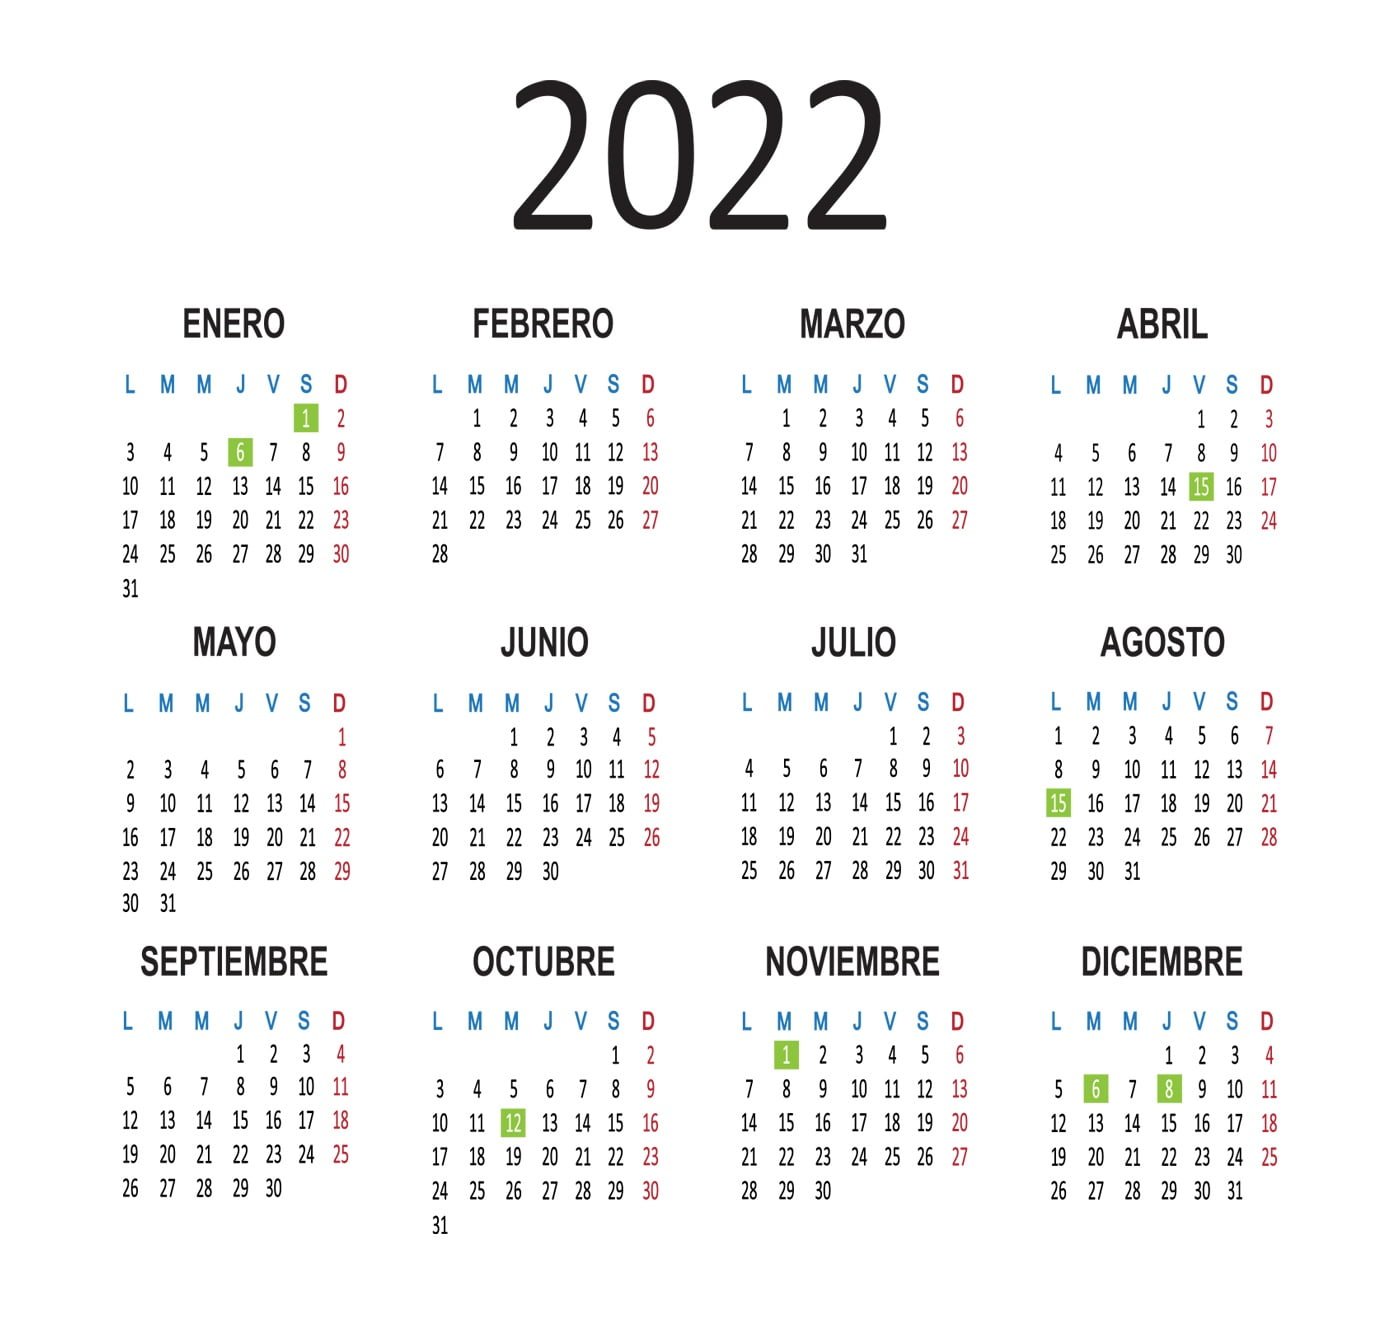 El Calendario Laboral De 2022 Ya Es Oficial Incluye 12 Festivos Hot